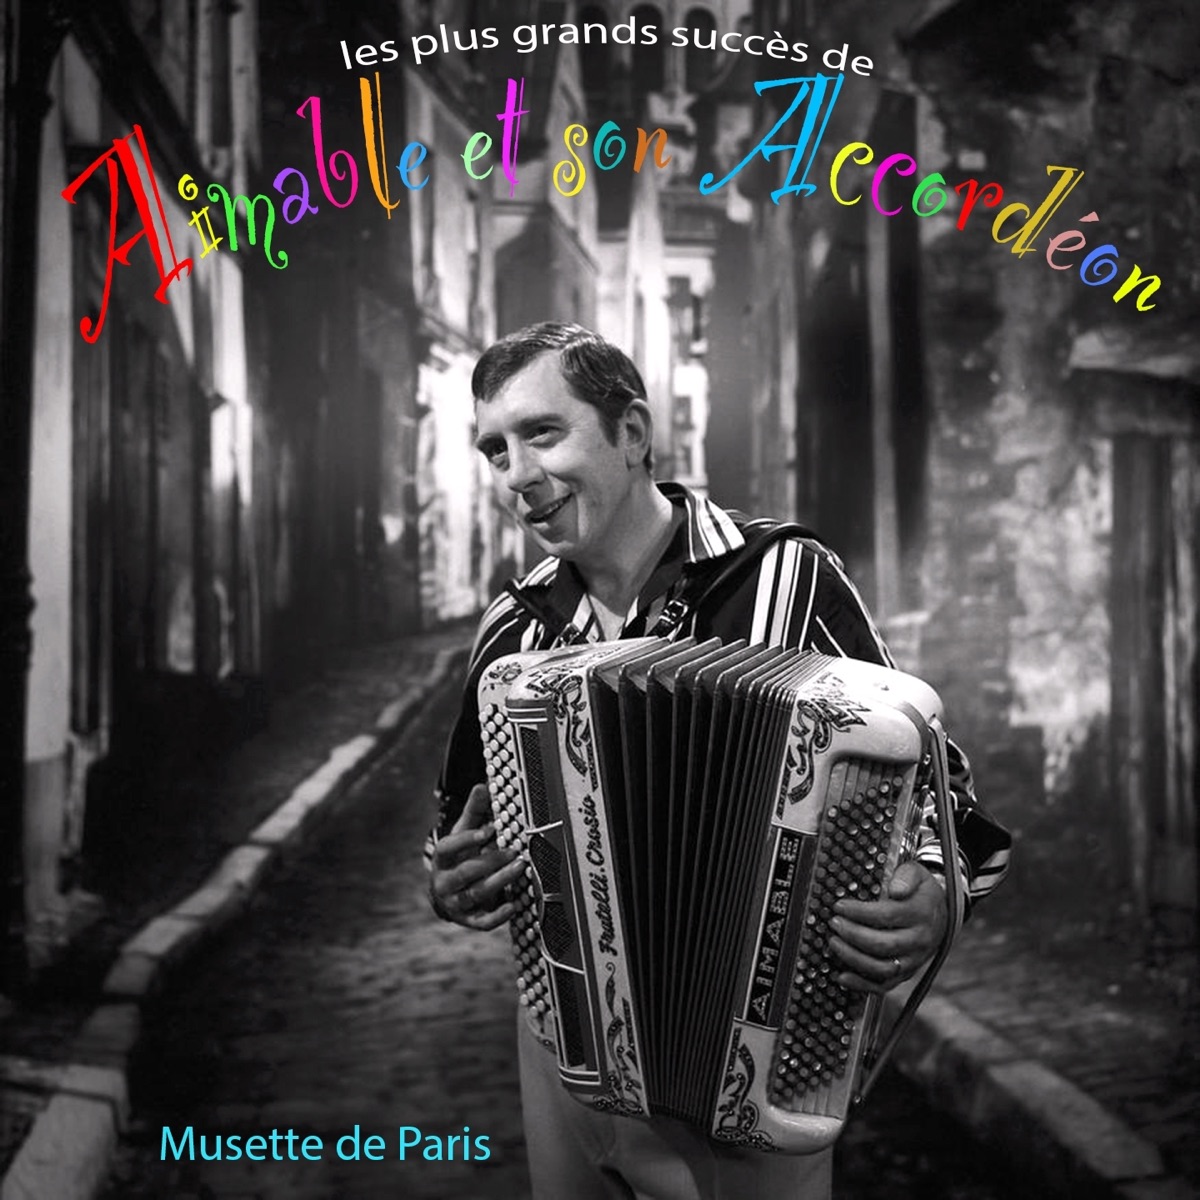 Les plus grands succès d'Aimable et son accordéon (Musette de Paris) –  Album par Aimable – Apple Music